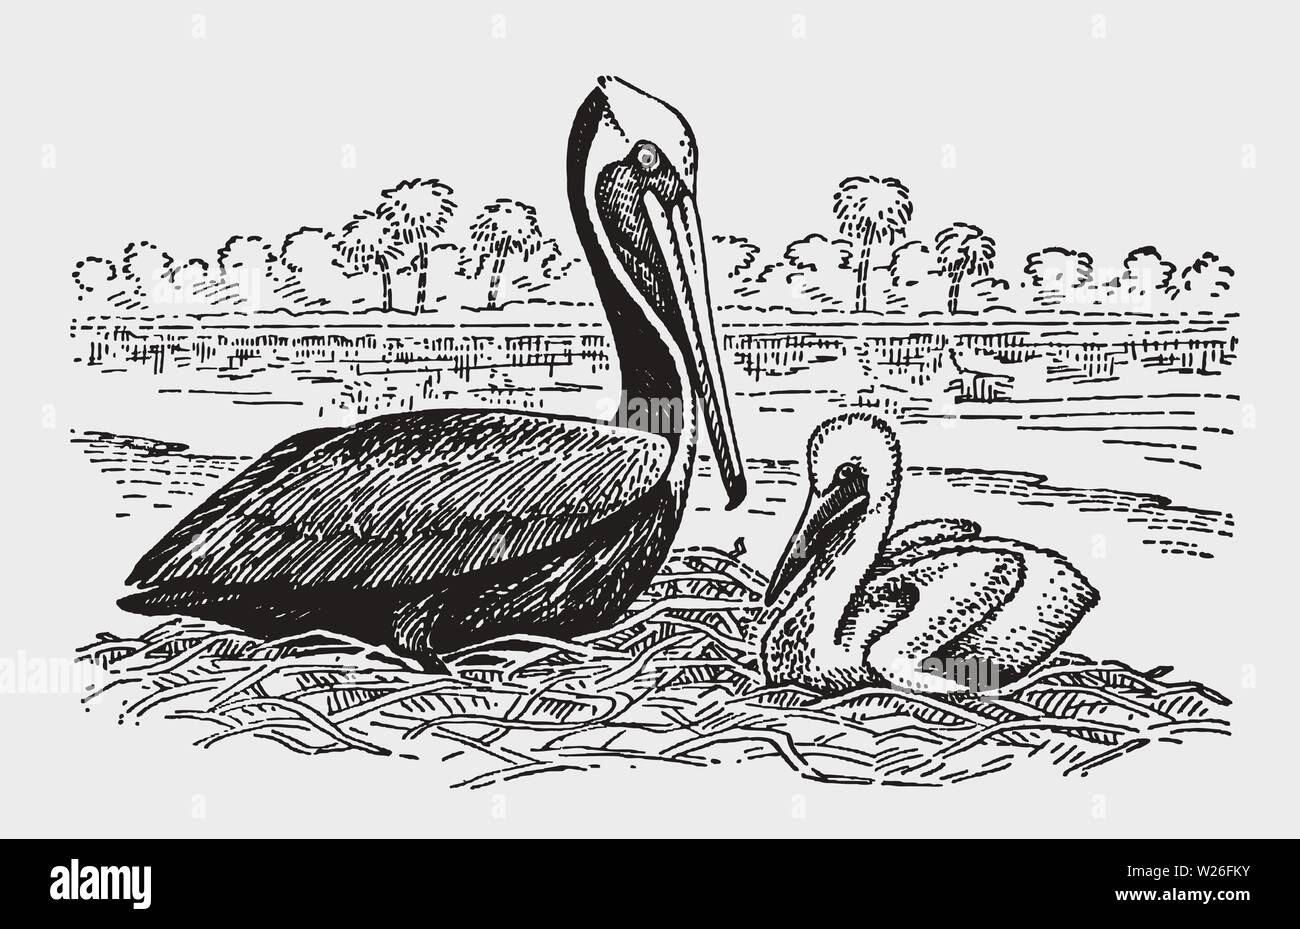 Des profils Pélican brun (Pelecanus occidentalis) avec une nana assise sur un nid. Après une gravure d'illustration historique du début du xxe siècle Illustration de Vecteur